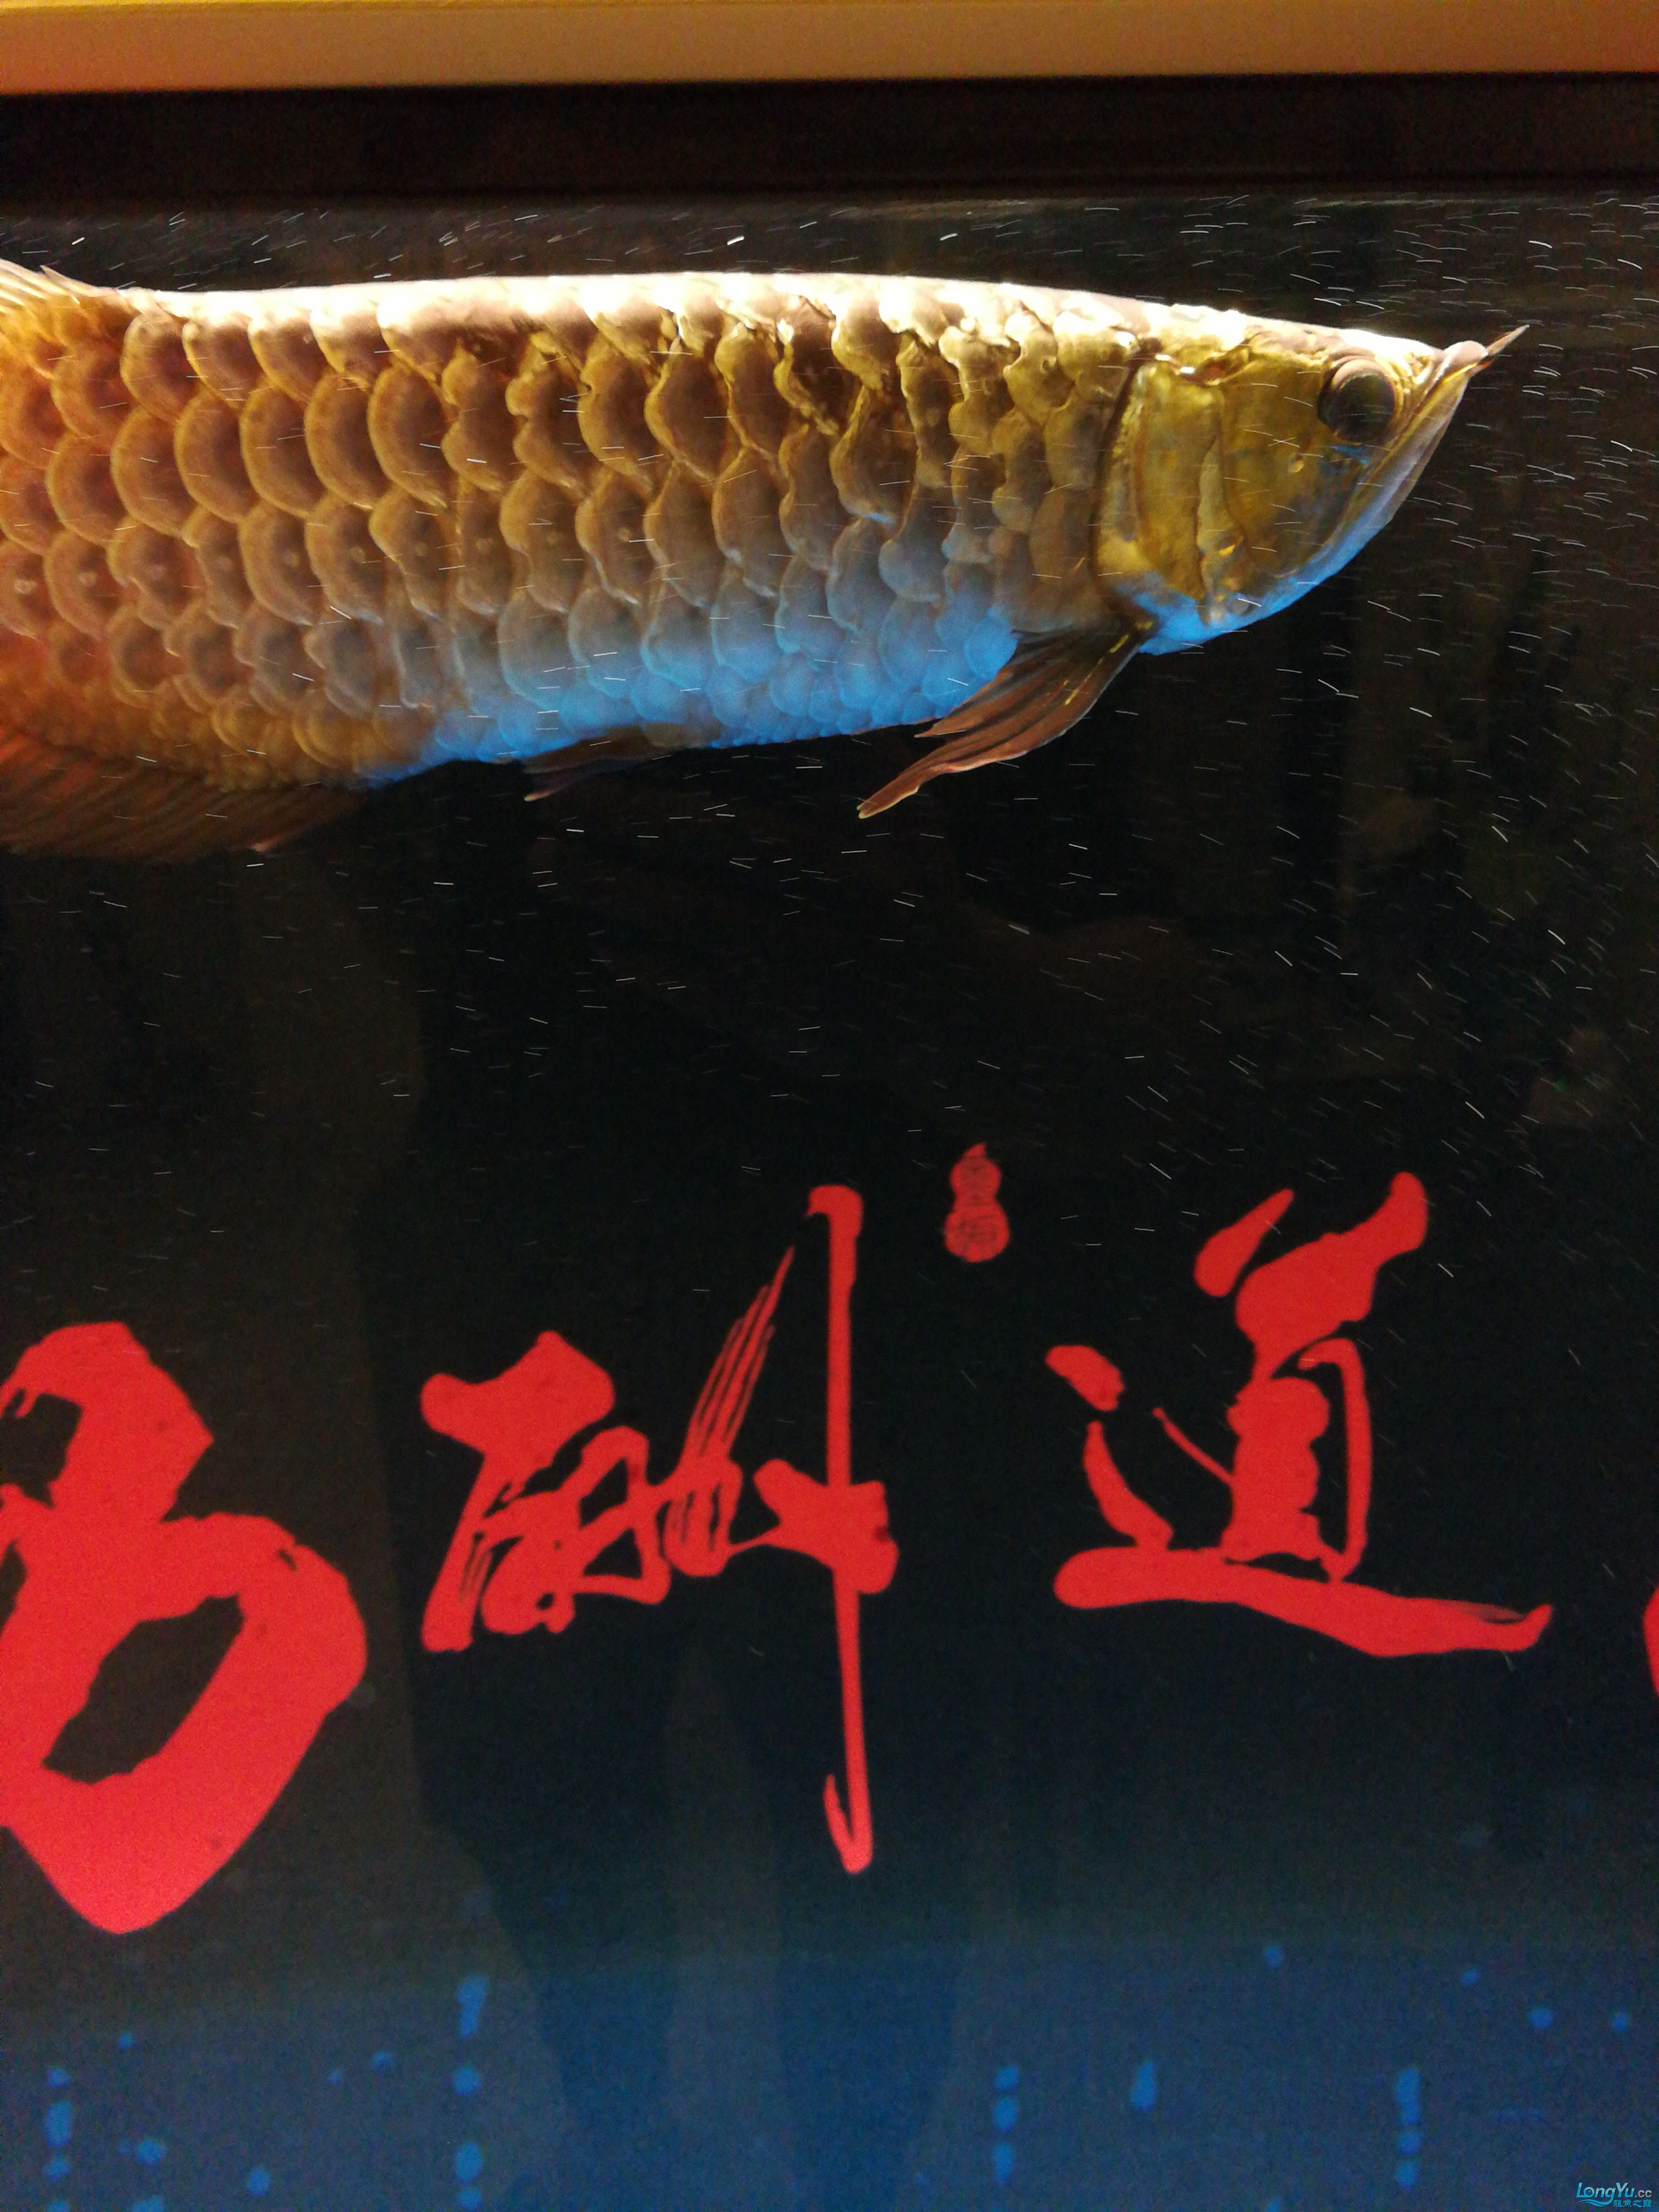 广州鱼缸批发市场求高人指点龙鱼腮盖有小洞 伊巴卡鱼 第2张